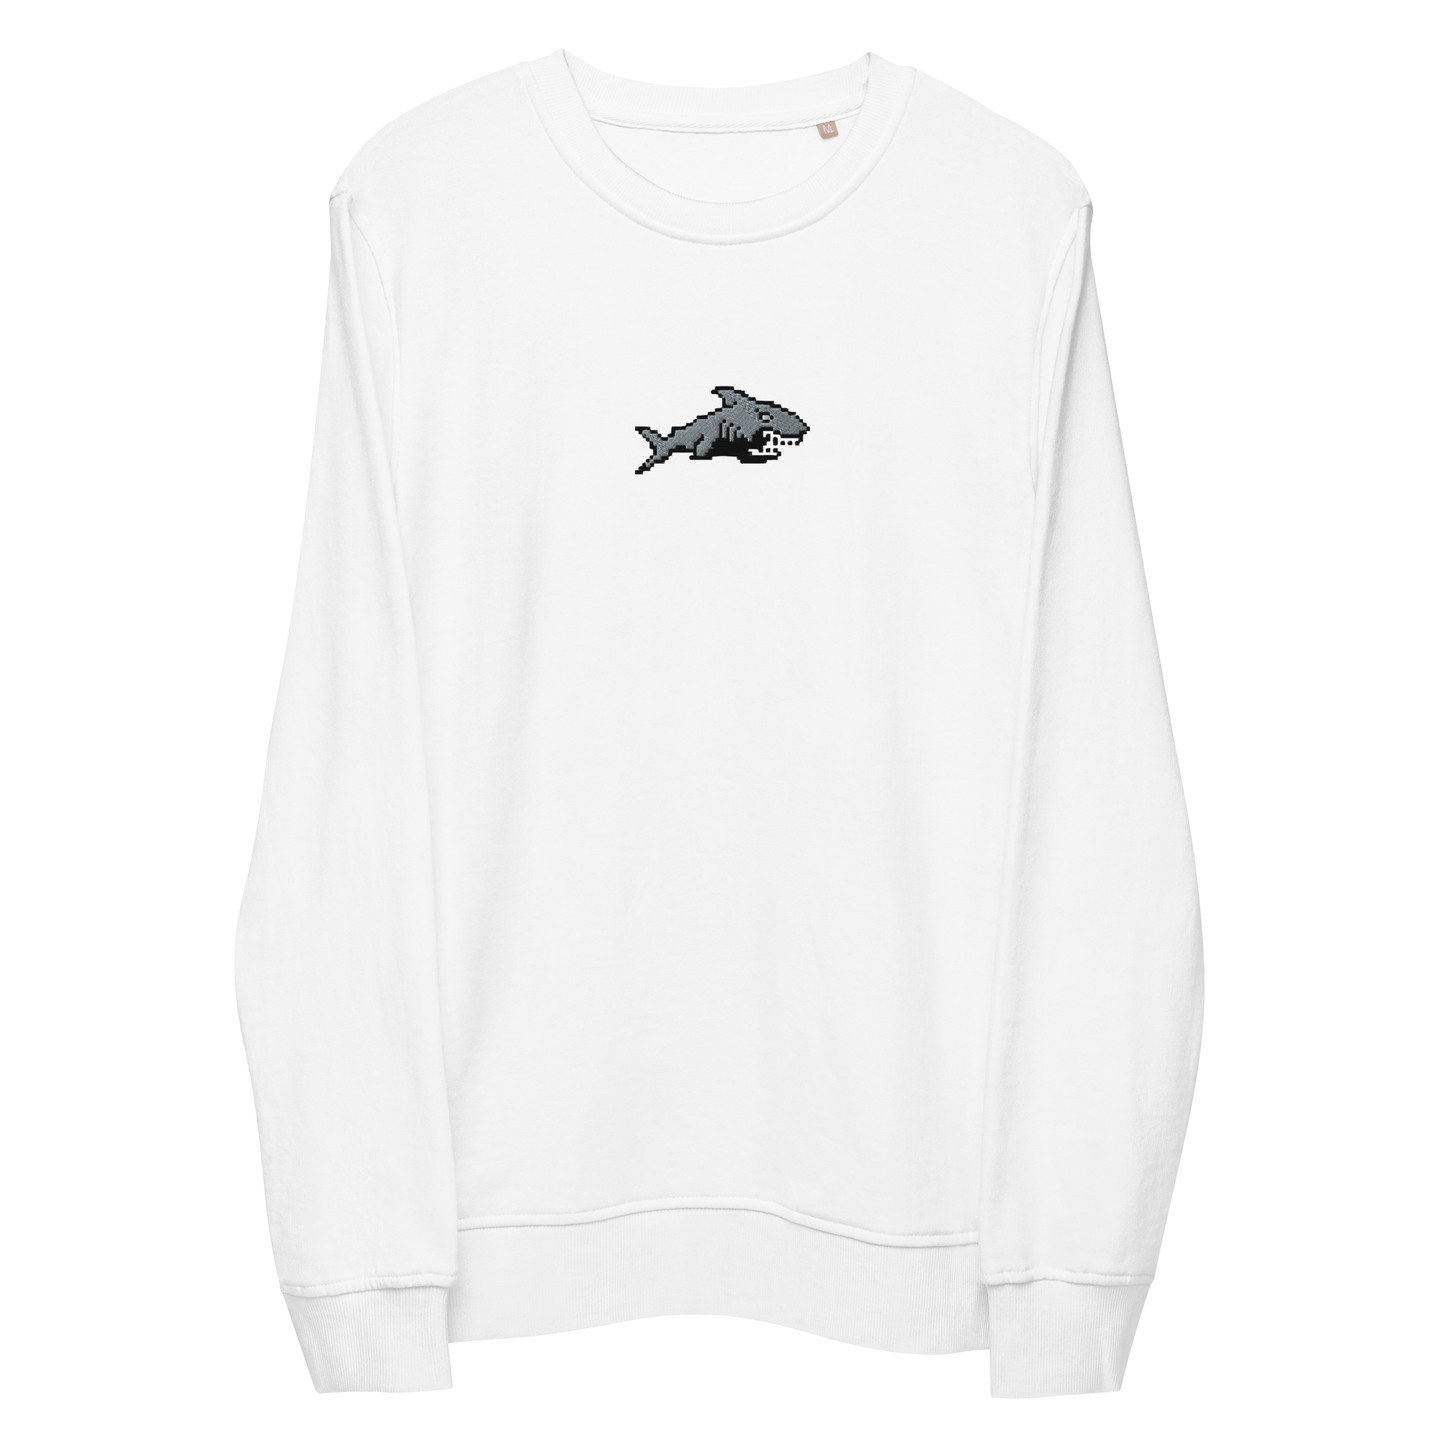 Sweatshirt - Shark - Eco